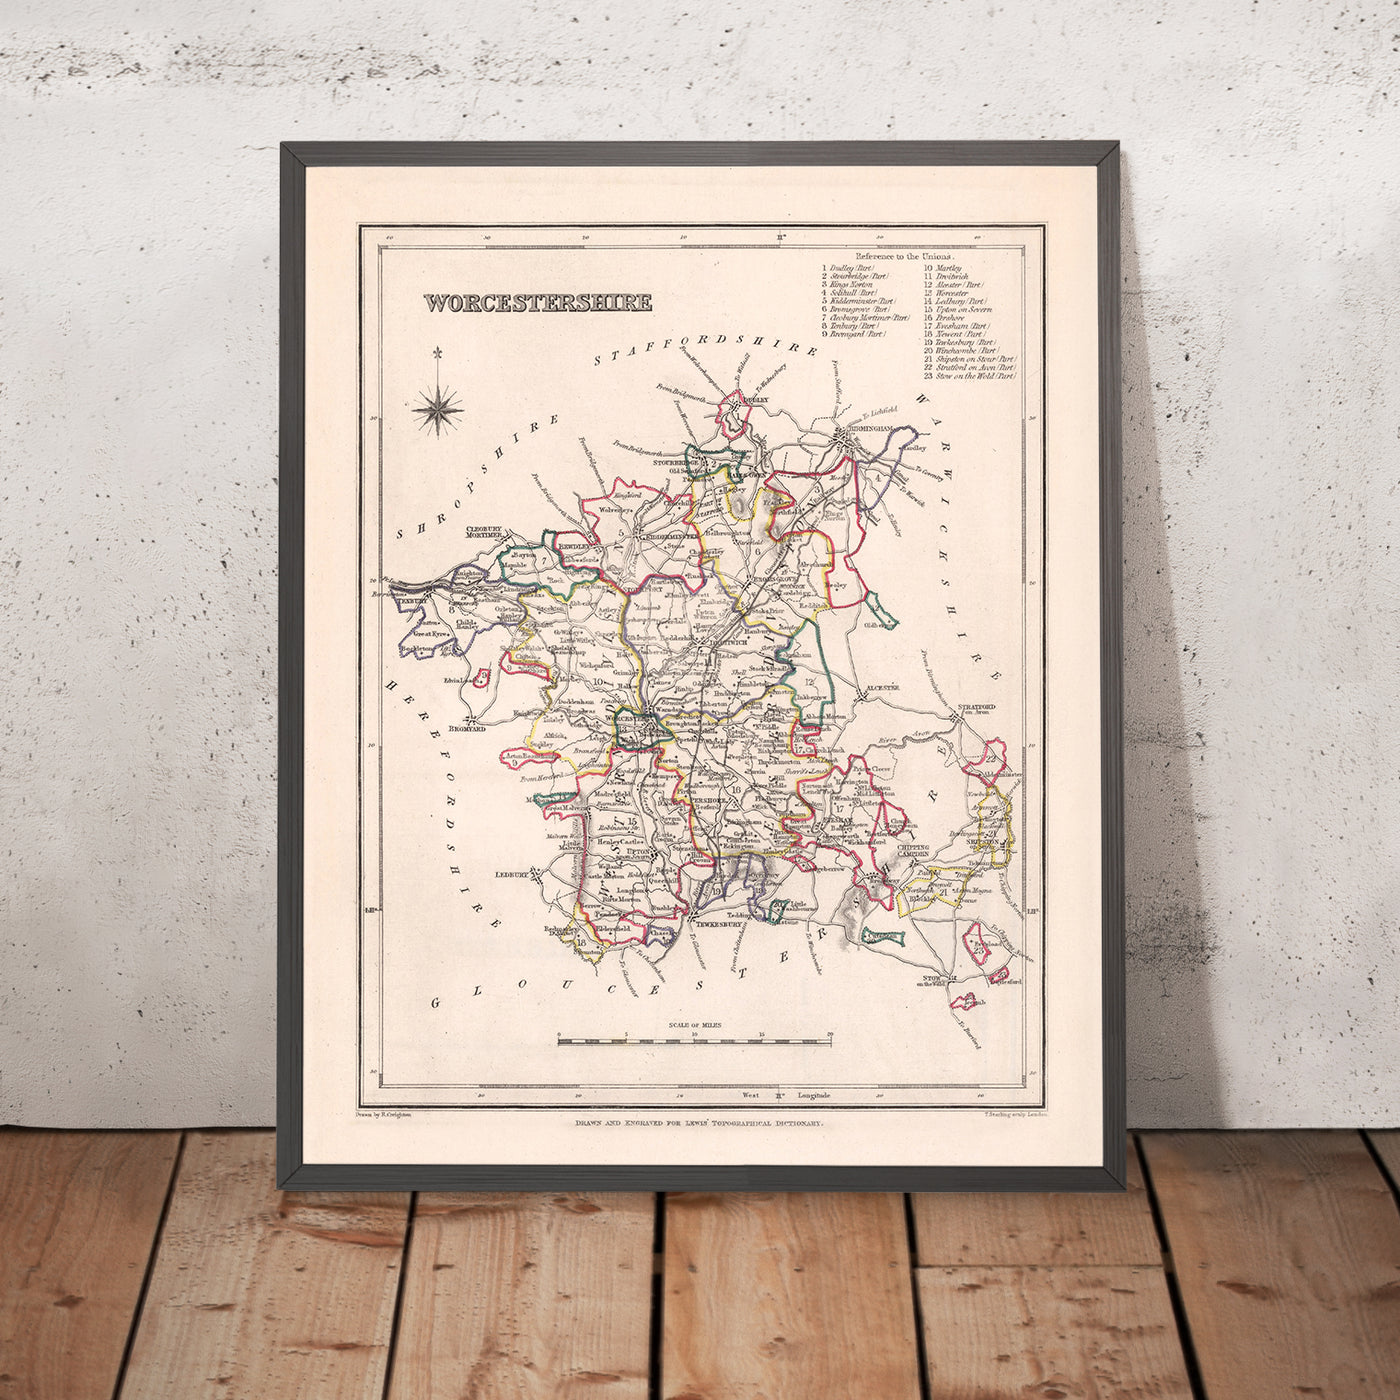 Ancienne carte du Worcestershire par Samuel Lewis, 1844 : Worcester, Kidderminster, Malvern, Evesham, Broadway